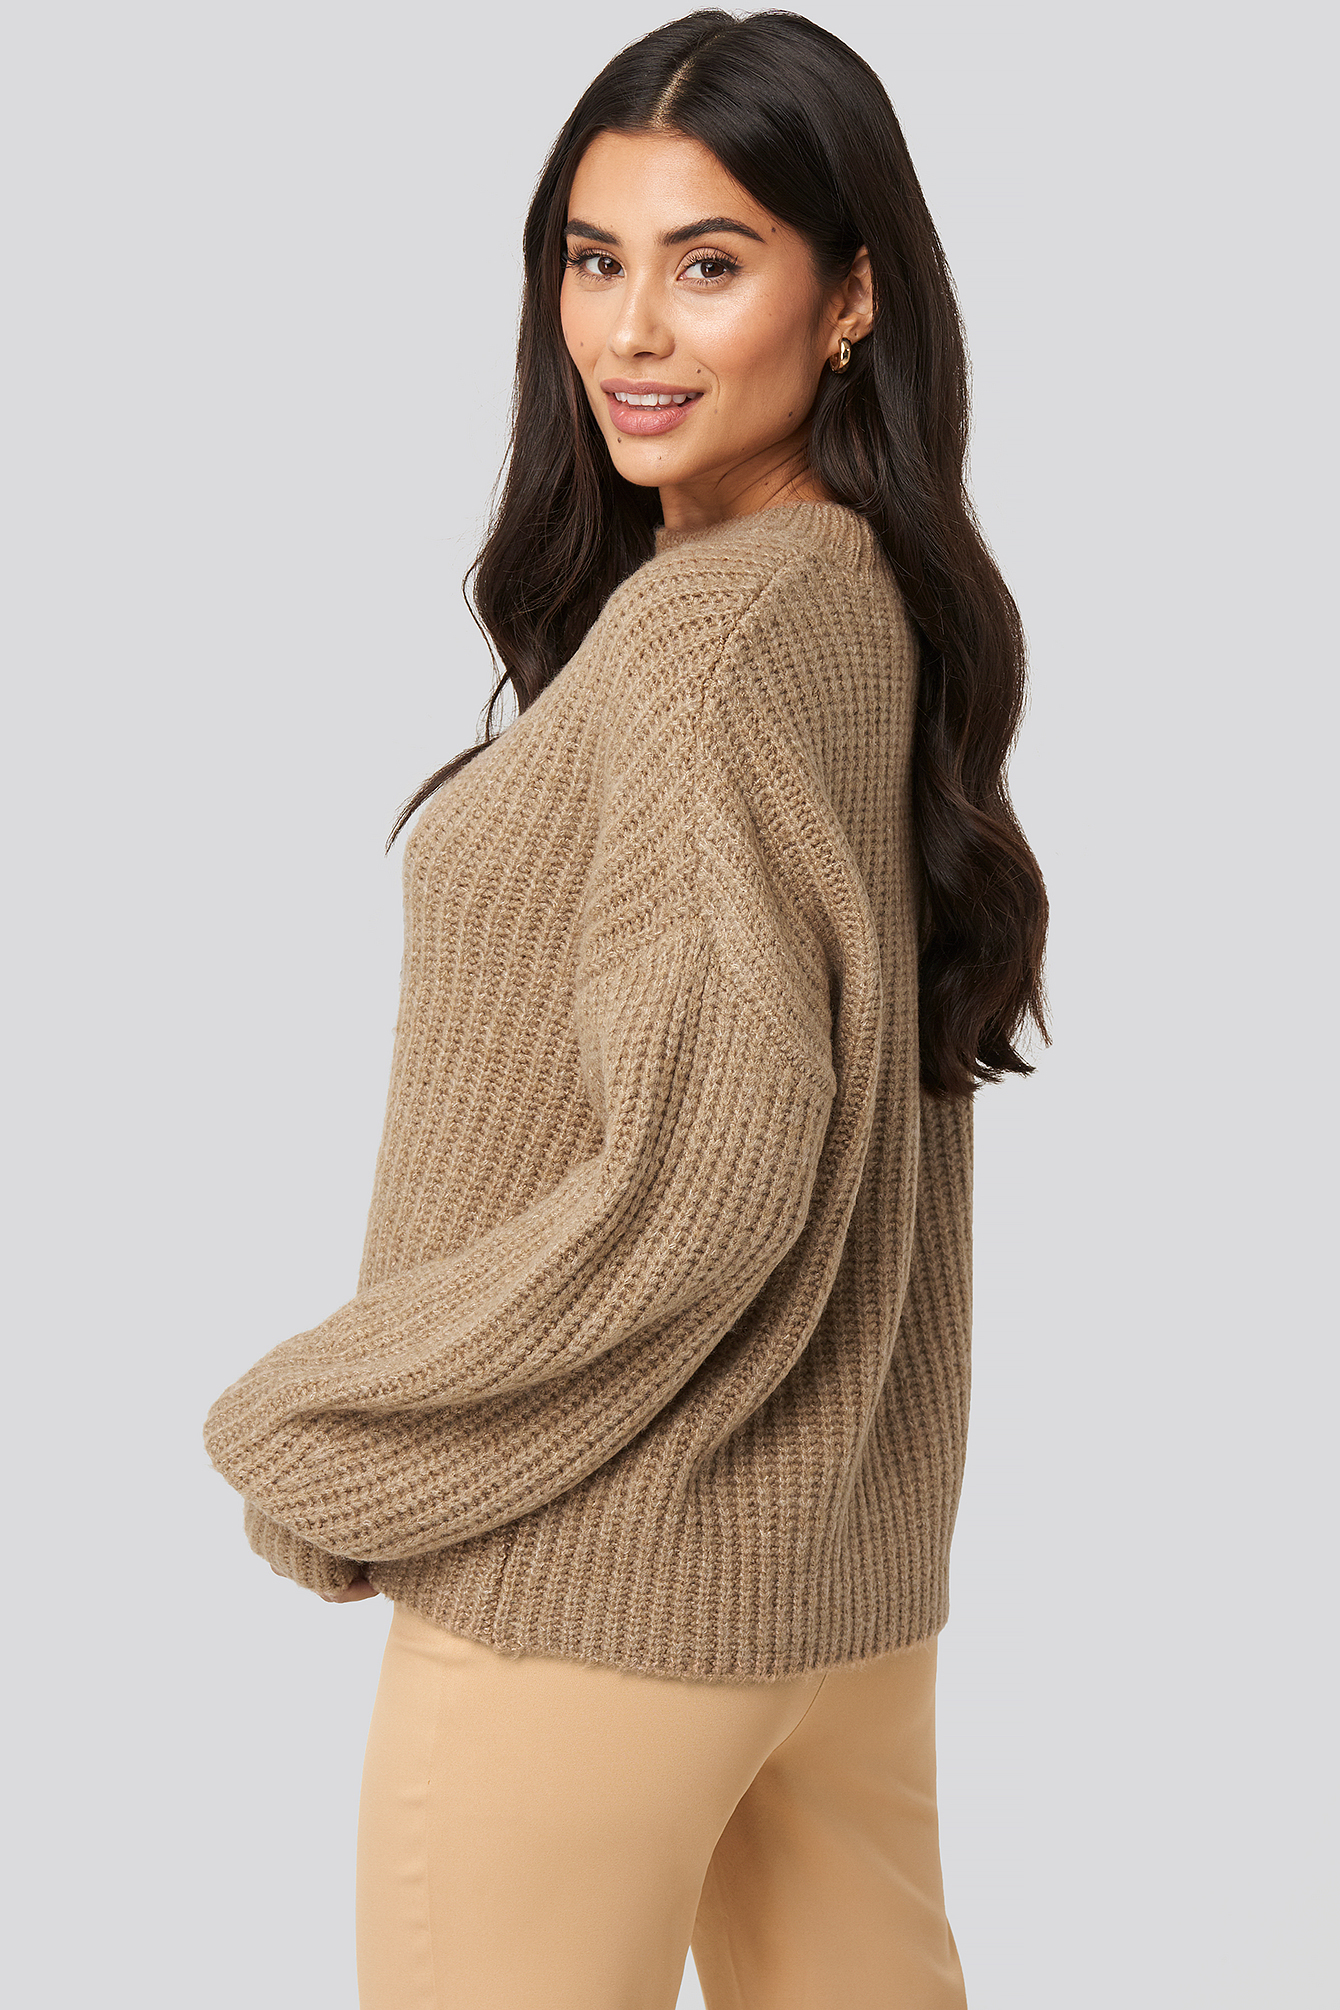 Sparen Sie 14% NA-KD Synthetik Dilara x Dropped Shoulder Oversized Knitted Sweater in Natur Damen Bekleidung Pullover und Strickwaren Pullover 